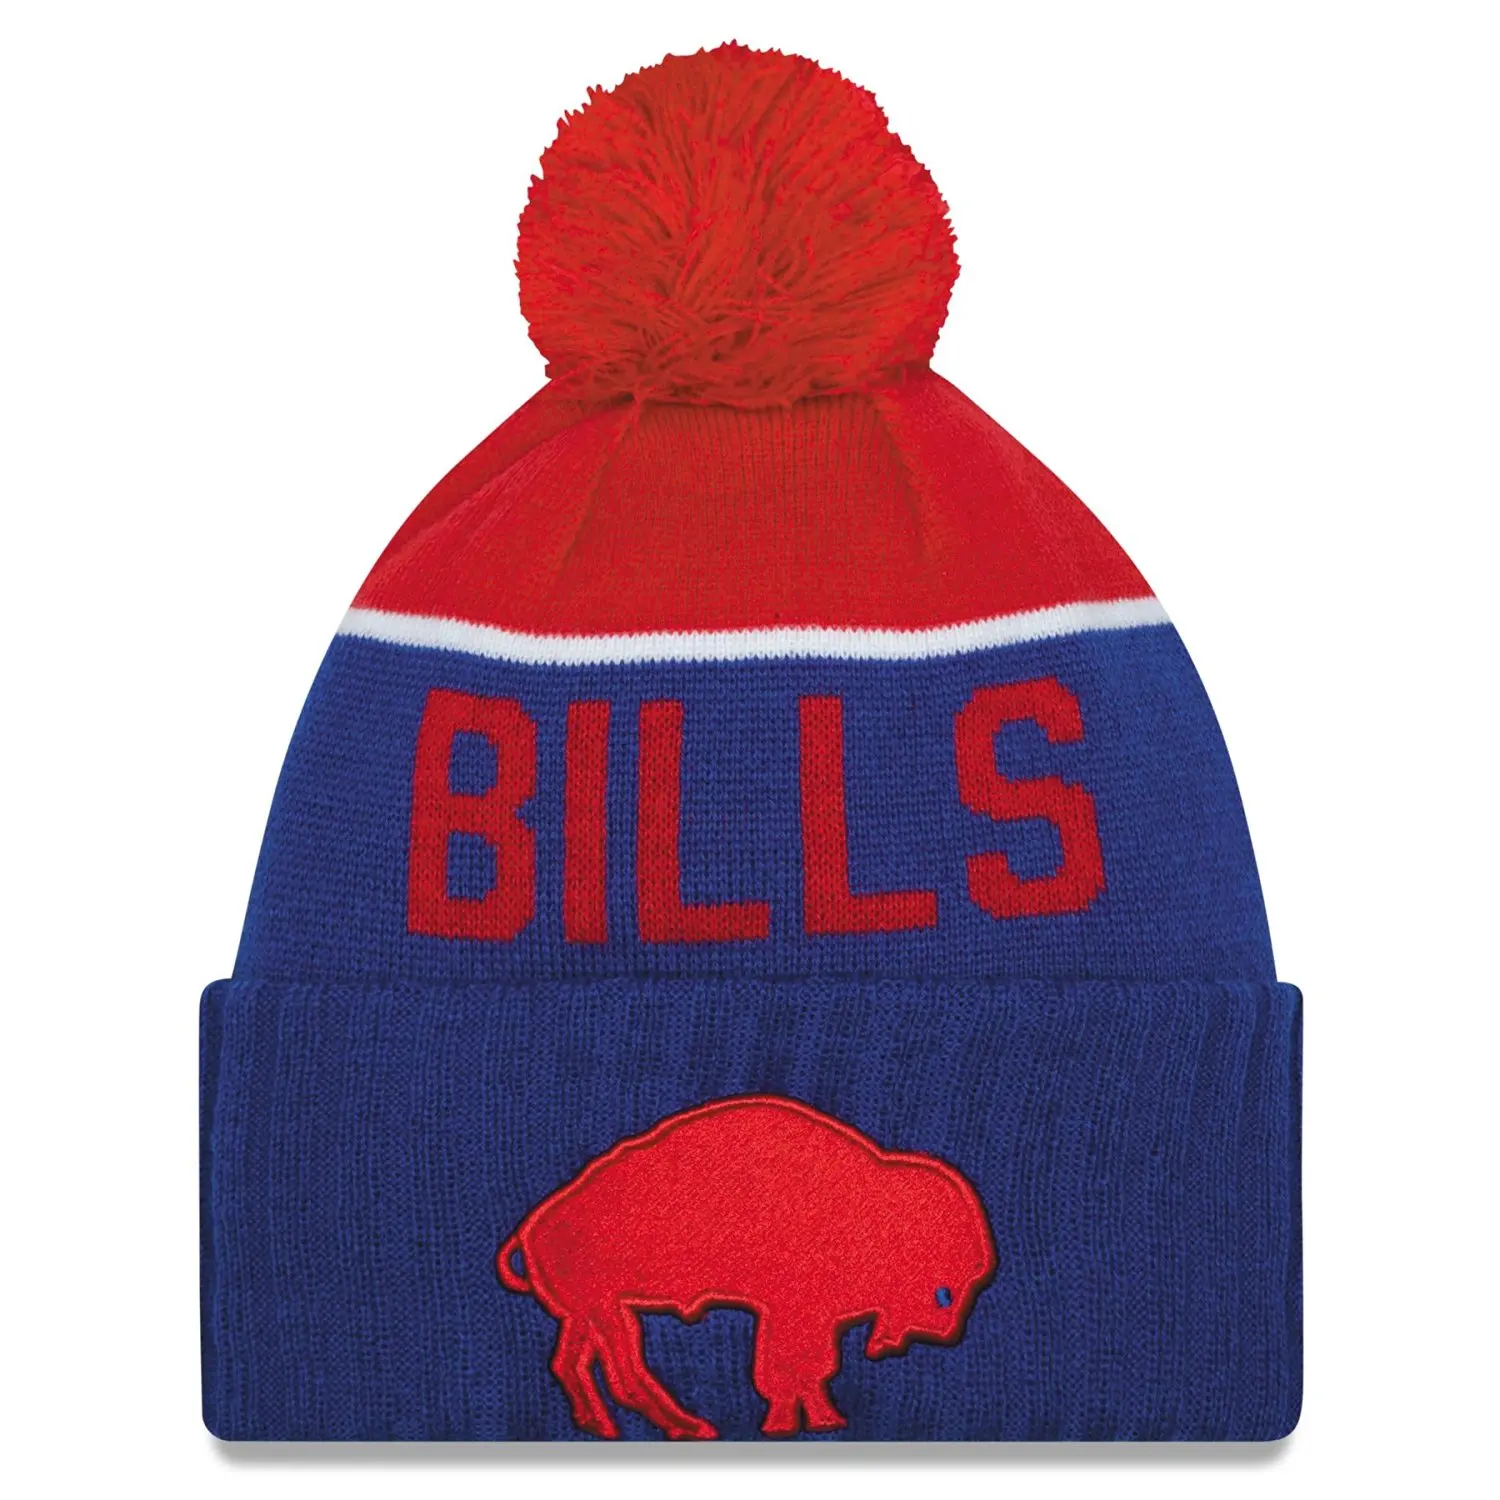 Buy Mens 2015 NFL Sideline On Field Classic Sport Knit Hat in Cheap ...